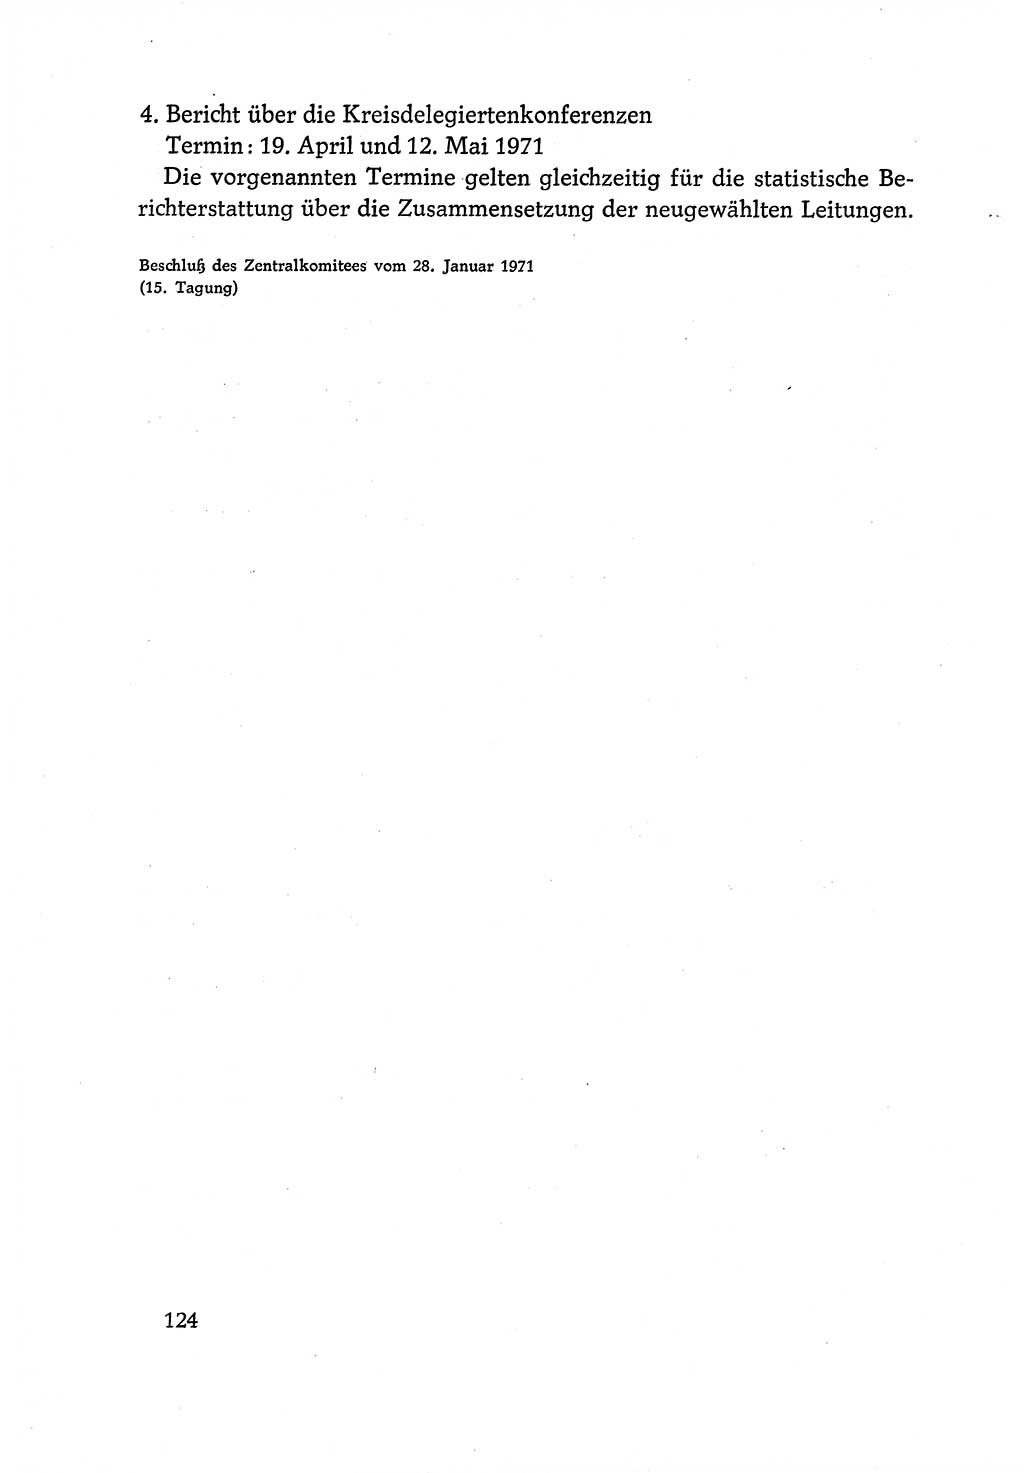 Dokumente der Sozialistischen Einheitspartei Deutschlands (SED) [Deutsche Demokratische Republik (DDR)] 1970-1971, Seite 124 (Dok. SED DDR 1970-1971, S. 124)